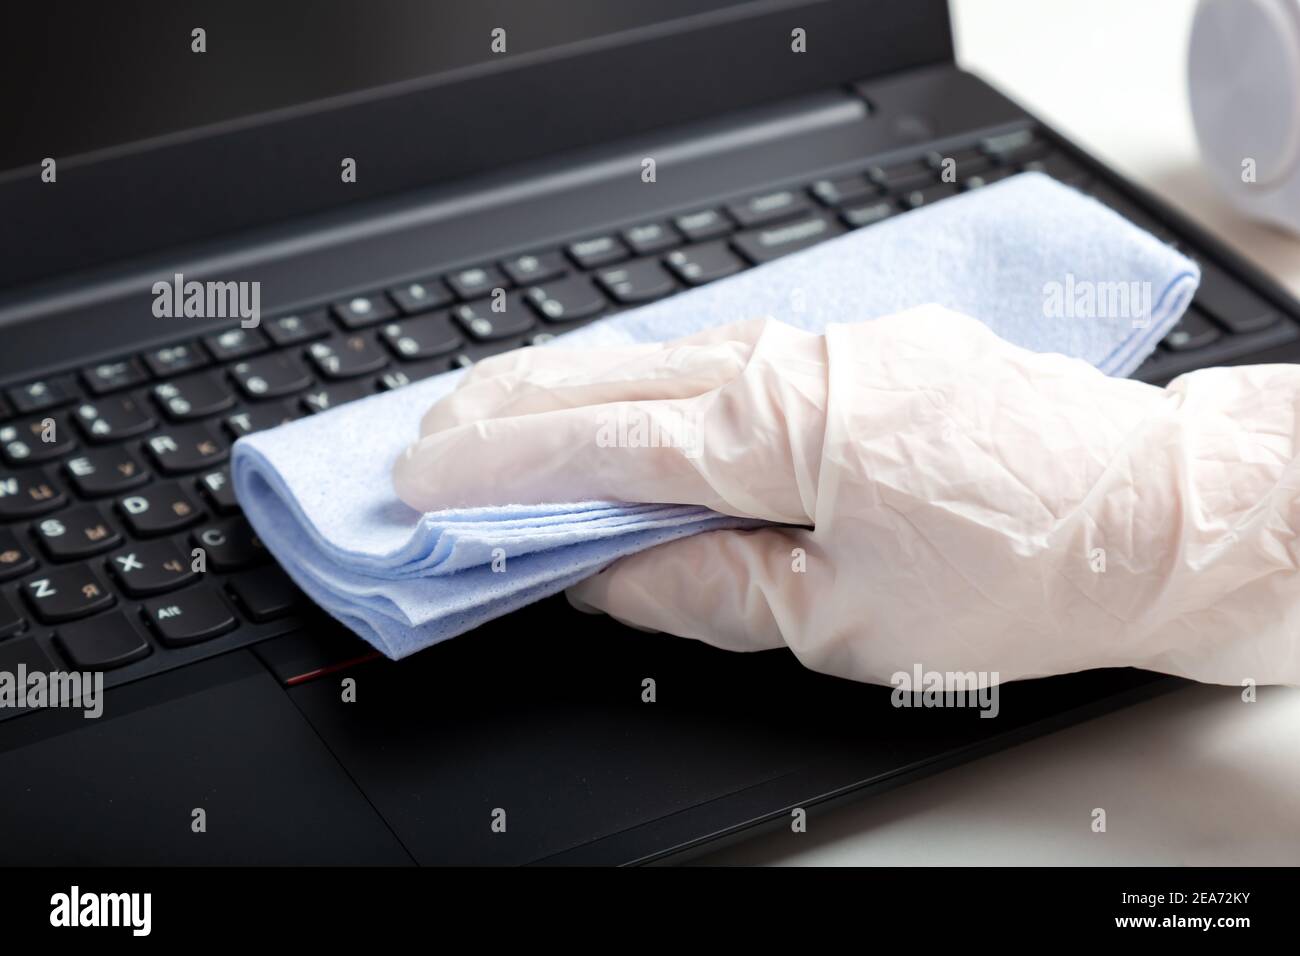 Femmes mains en gants désinfection du clavier d'ordinateur portable à l'aide de lingettes désinfectantes humides. Femme nettoyant le clavier contre les virus les bactéries empêchent le covid Banque D'Images